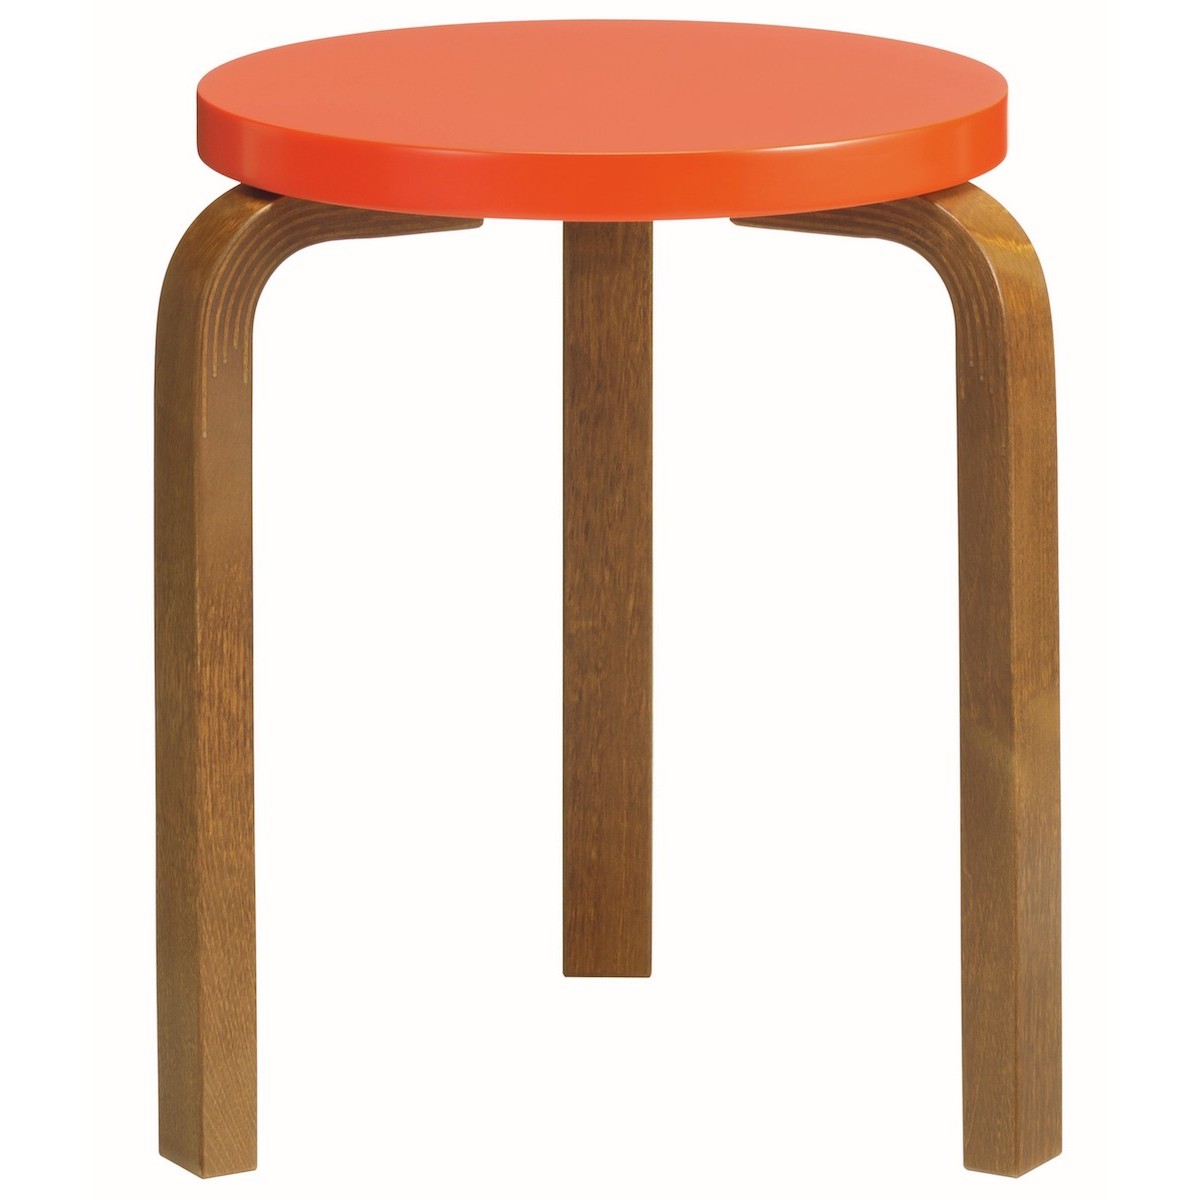 walnut + bright red - stool 60